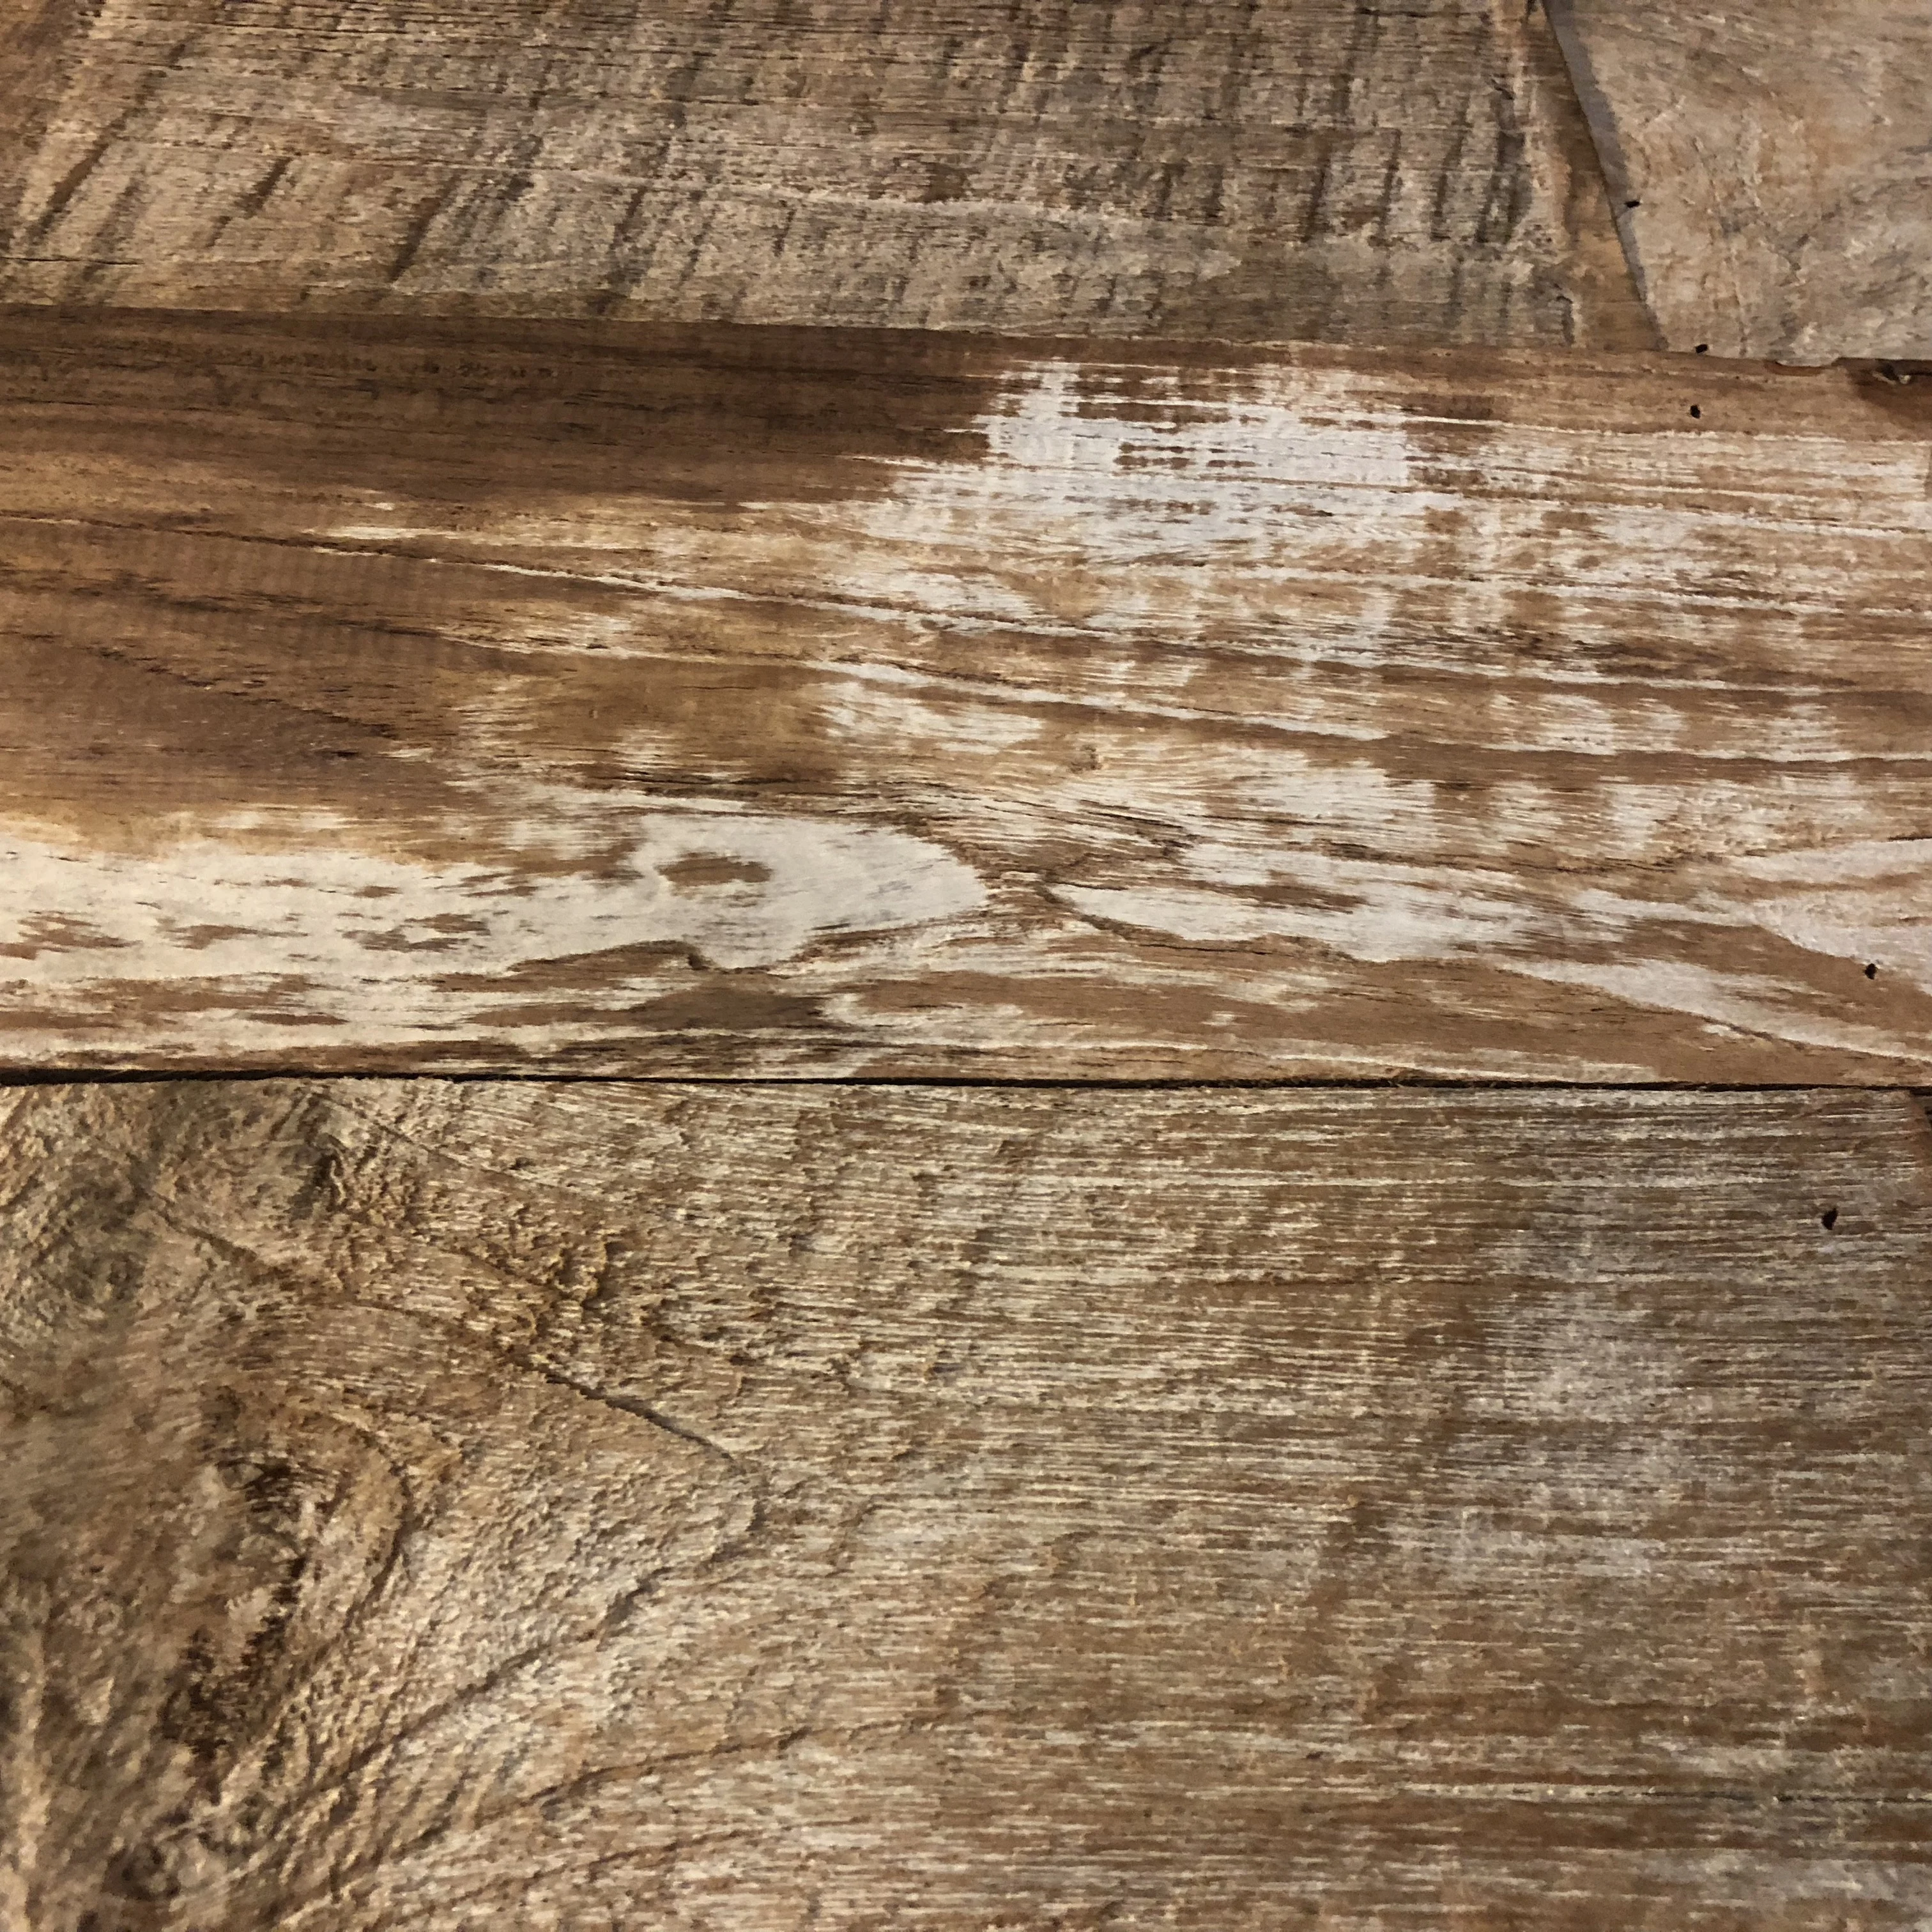 Teak Barn Wood Plank And Slat Buy Barnwood Plank